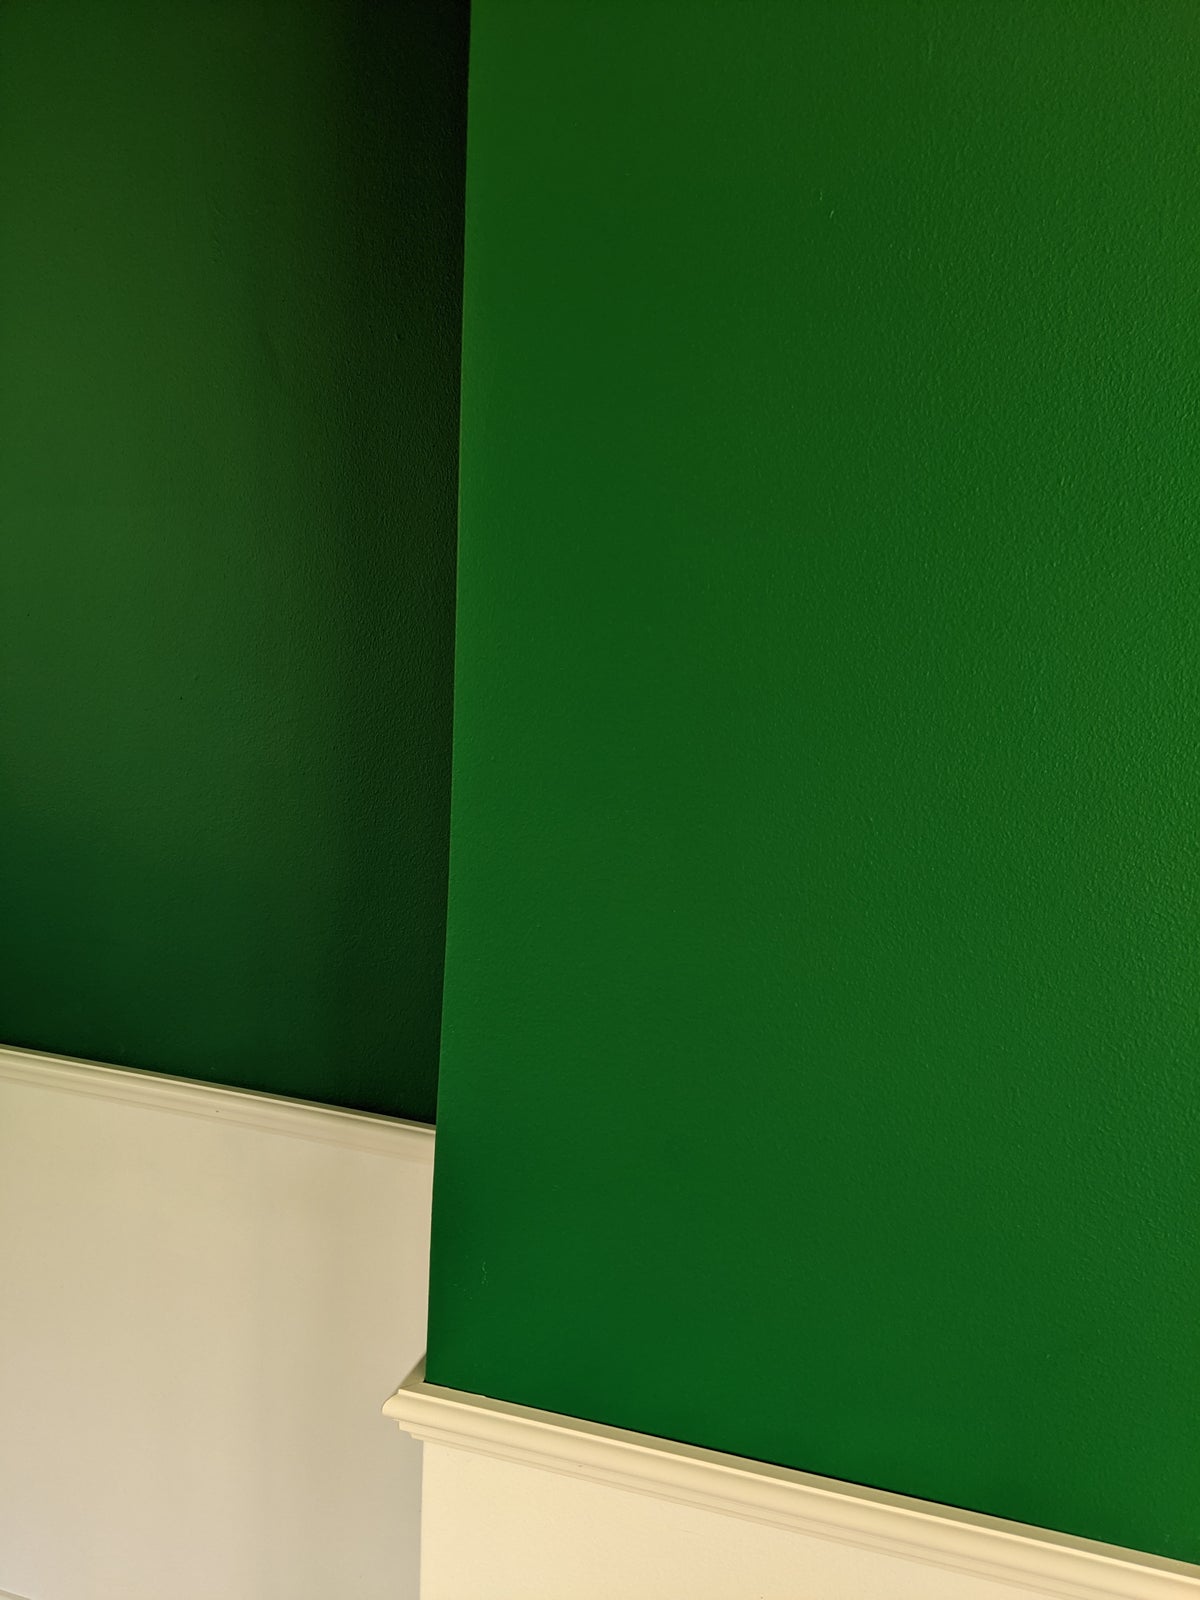 Mørkegrøn vægmaling, Beck og Jørgensen, 9 liter